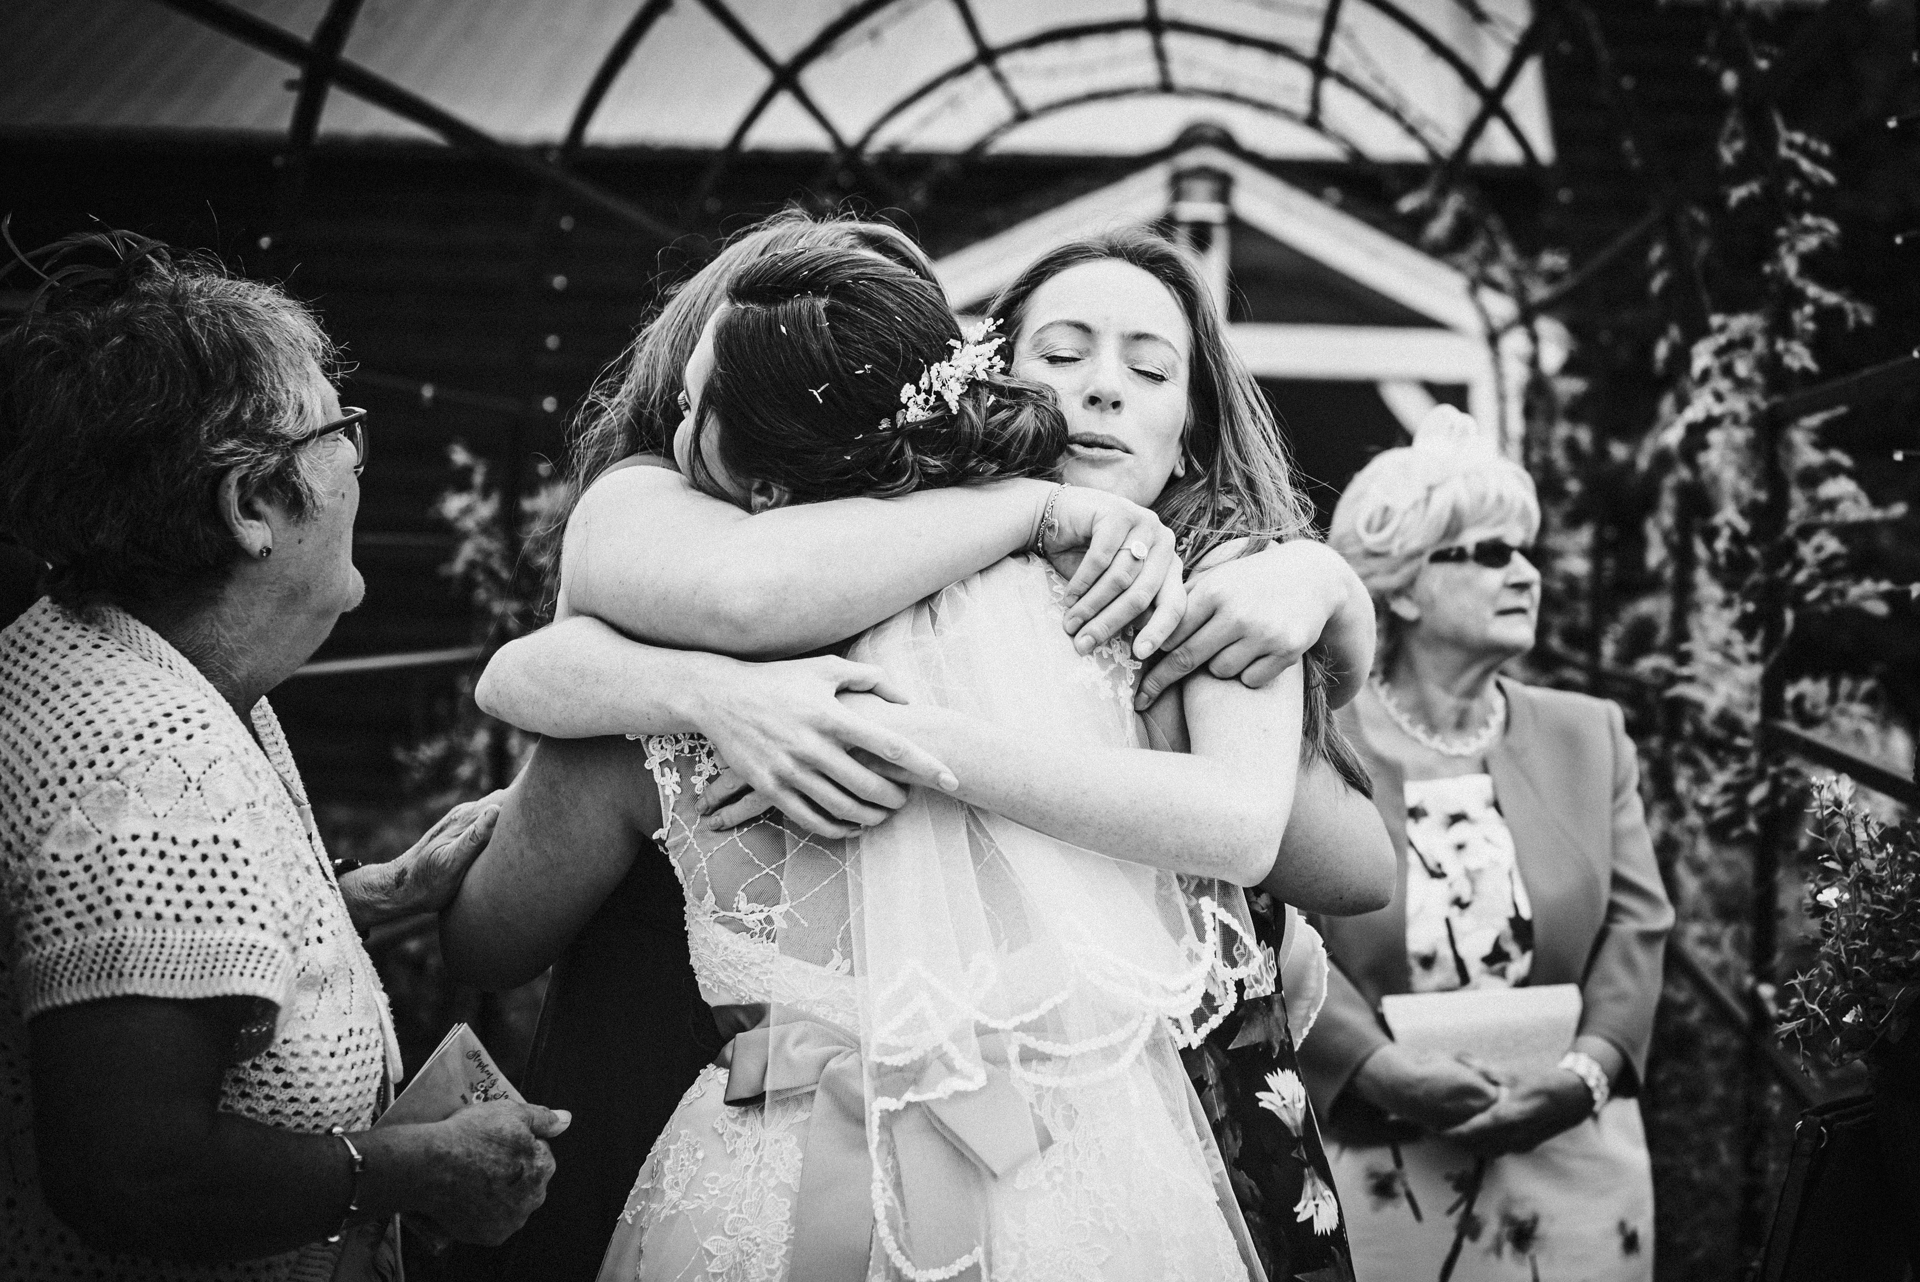 Wedding guests hug the bride